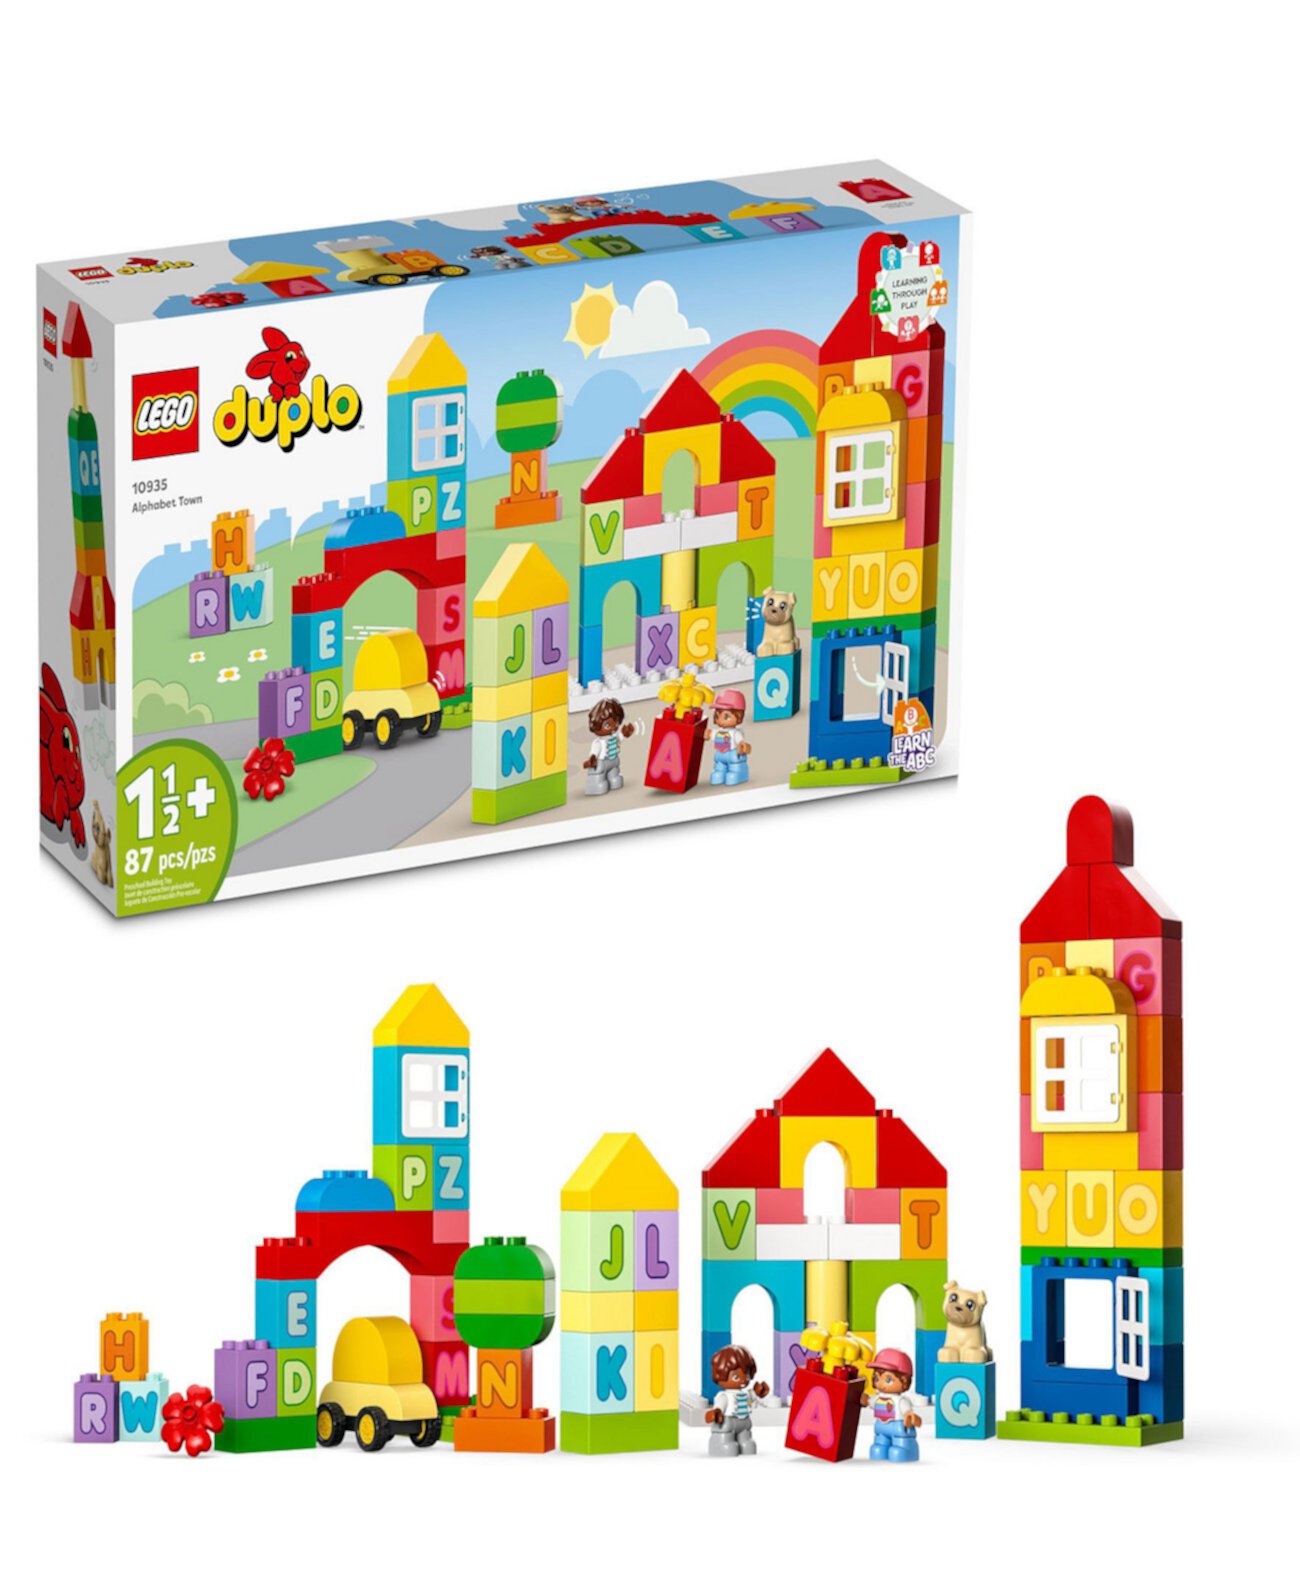 DUPLO 10935 Классический Город Алфавита Игровой Конструктор Lego